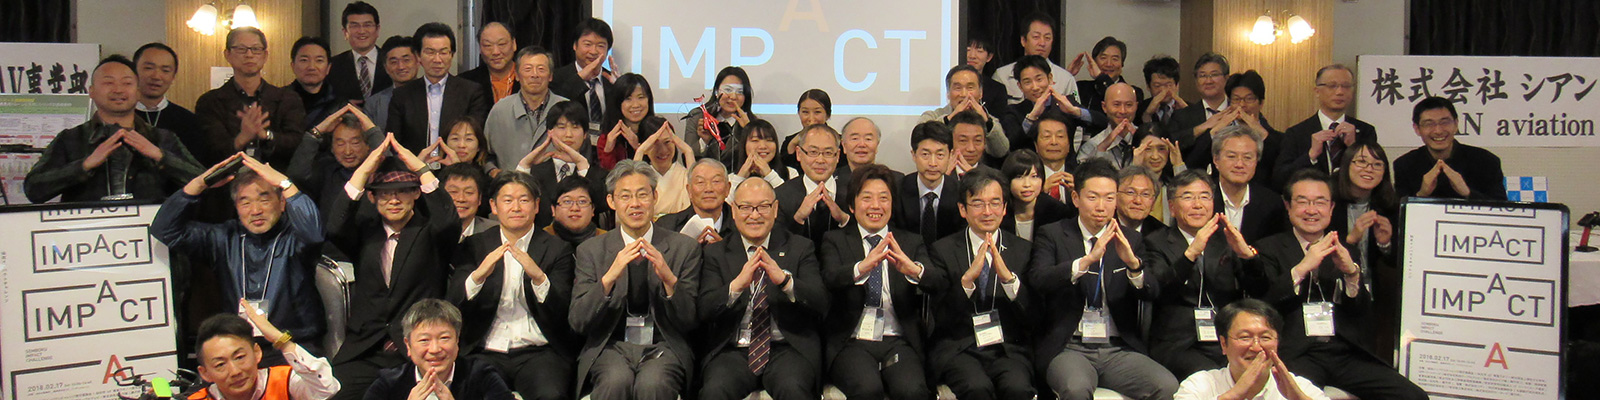 あきた芸術村にて開催された「IoT インパクトチャレンジ in 仙北」。プレゼン大会の参加者のみなさん。